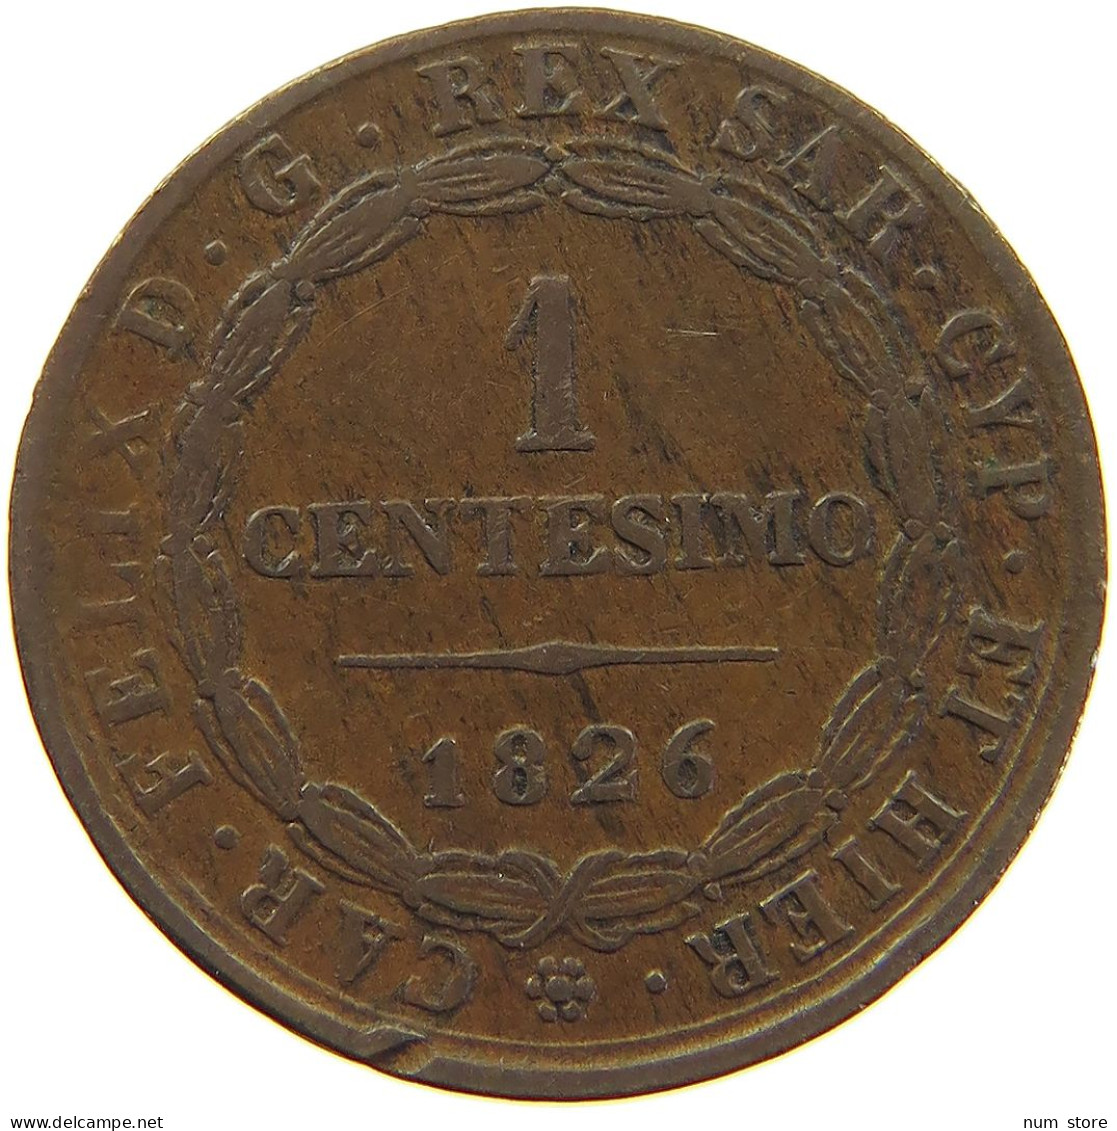 ITALY STATES SARDINIA CENTESIMO 1826 Carlo Felice 1821-1831 #s003 0243 - Italian Piedmont-Sardinia-Savoie